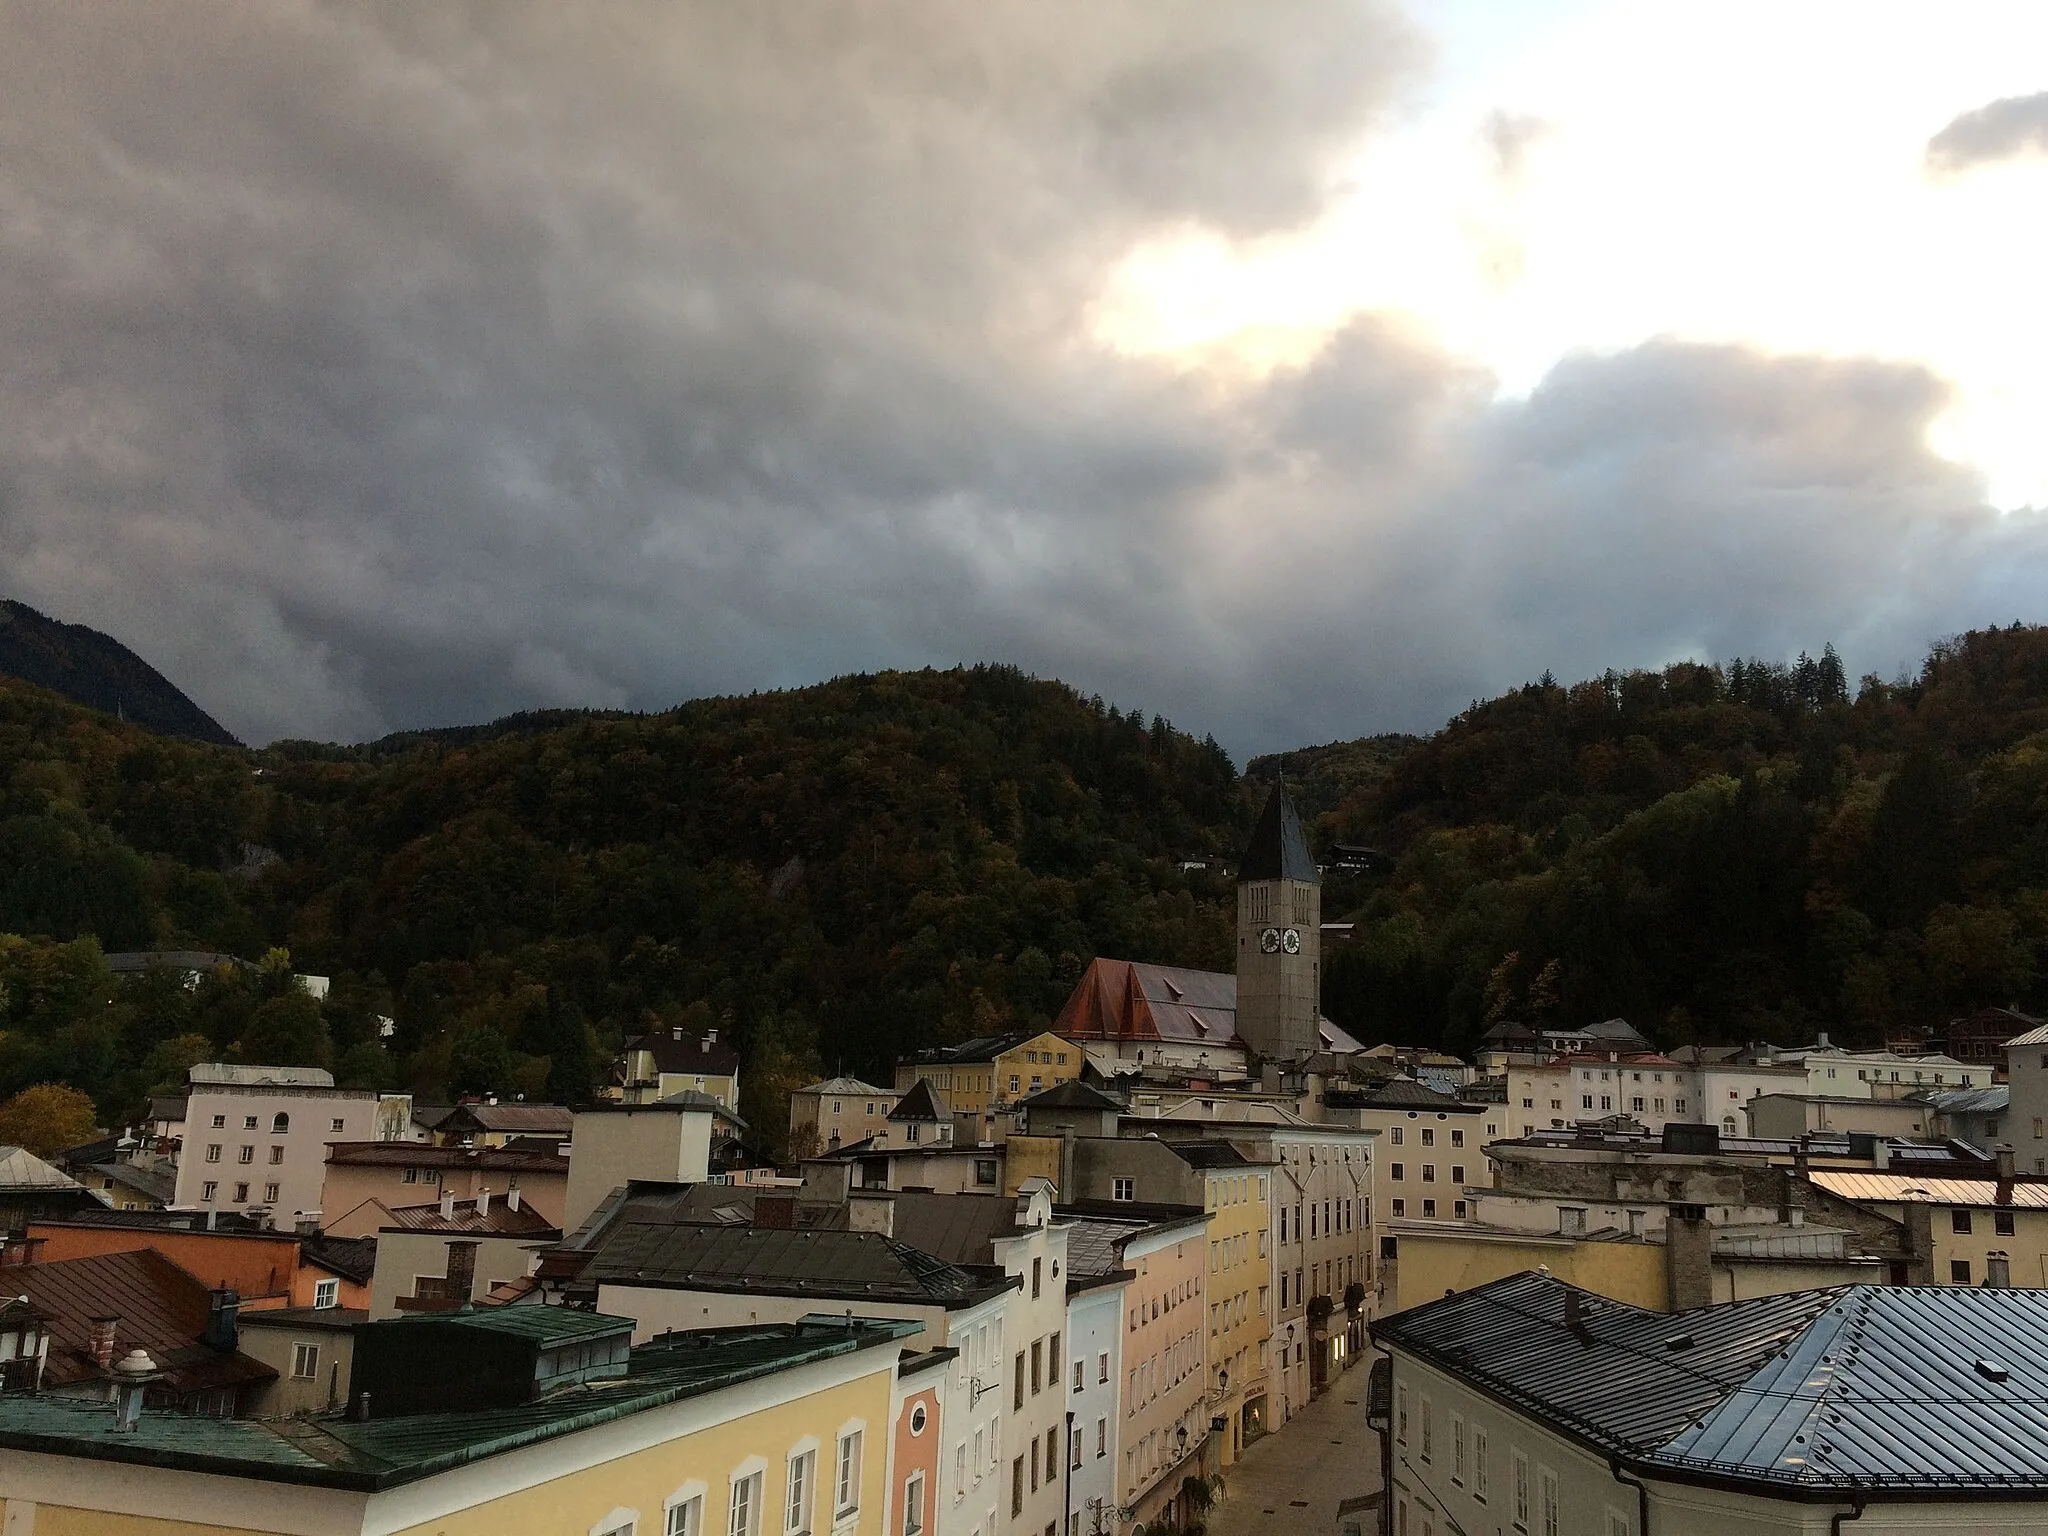 Zdjęcie: Salzburg